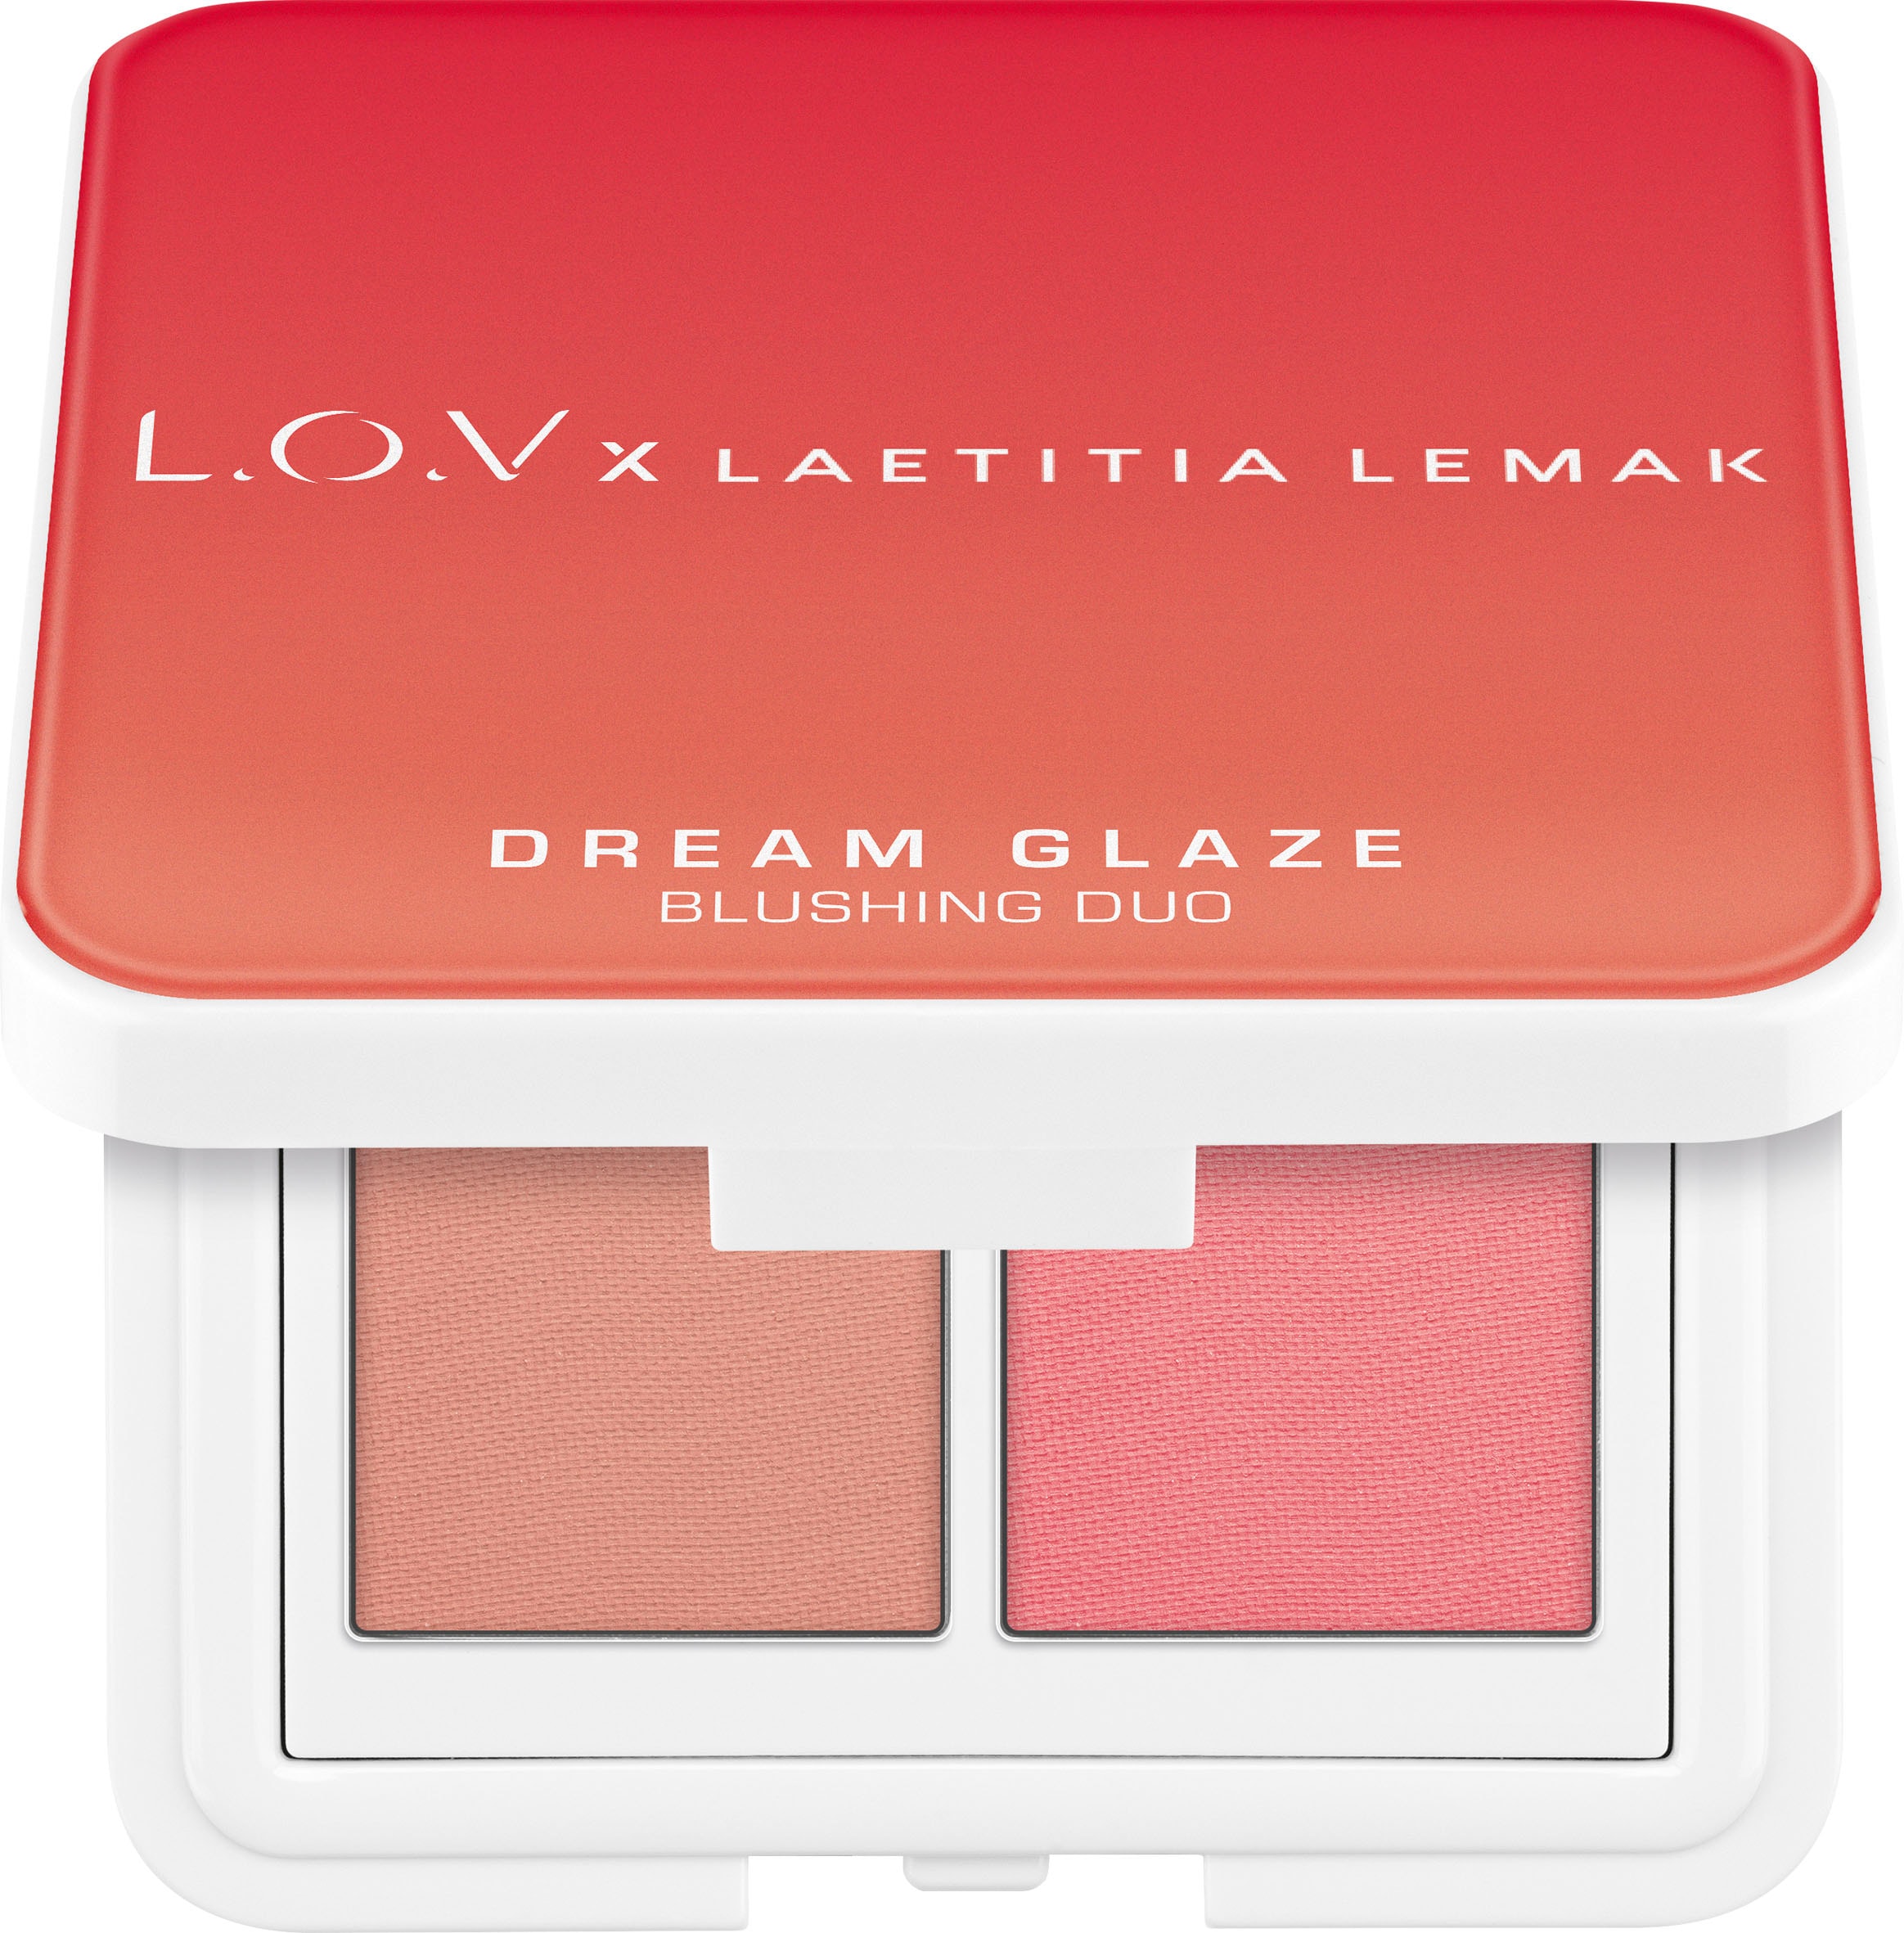 Rouge-Palette »L.O.V x LAETITIA LEMAK DREAM GLAZE Blushing Duo«